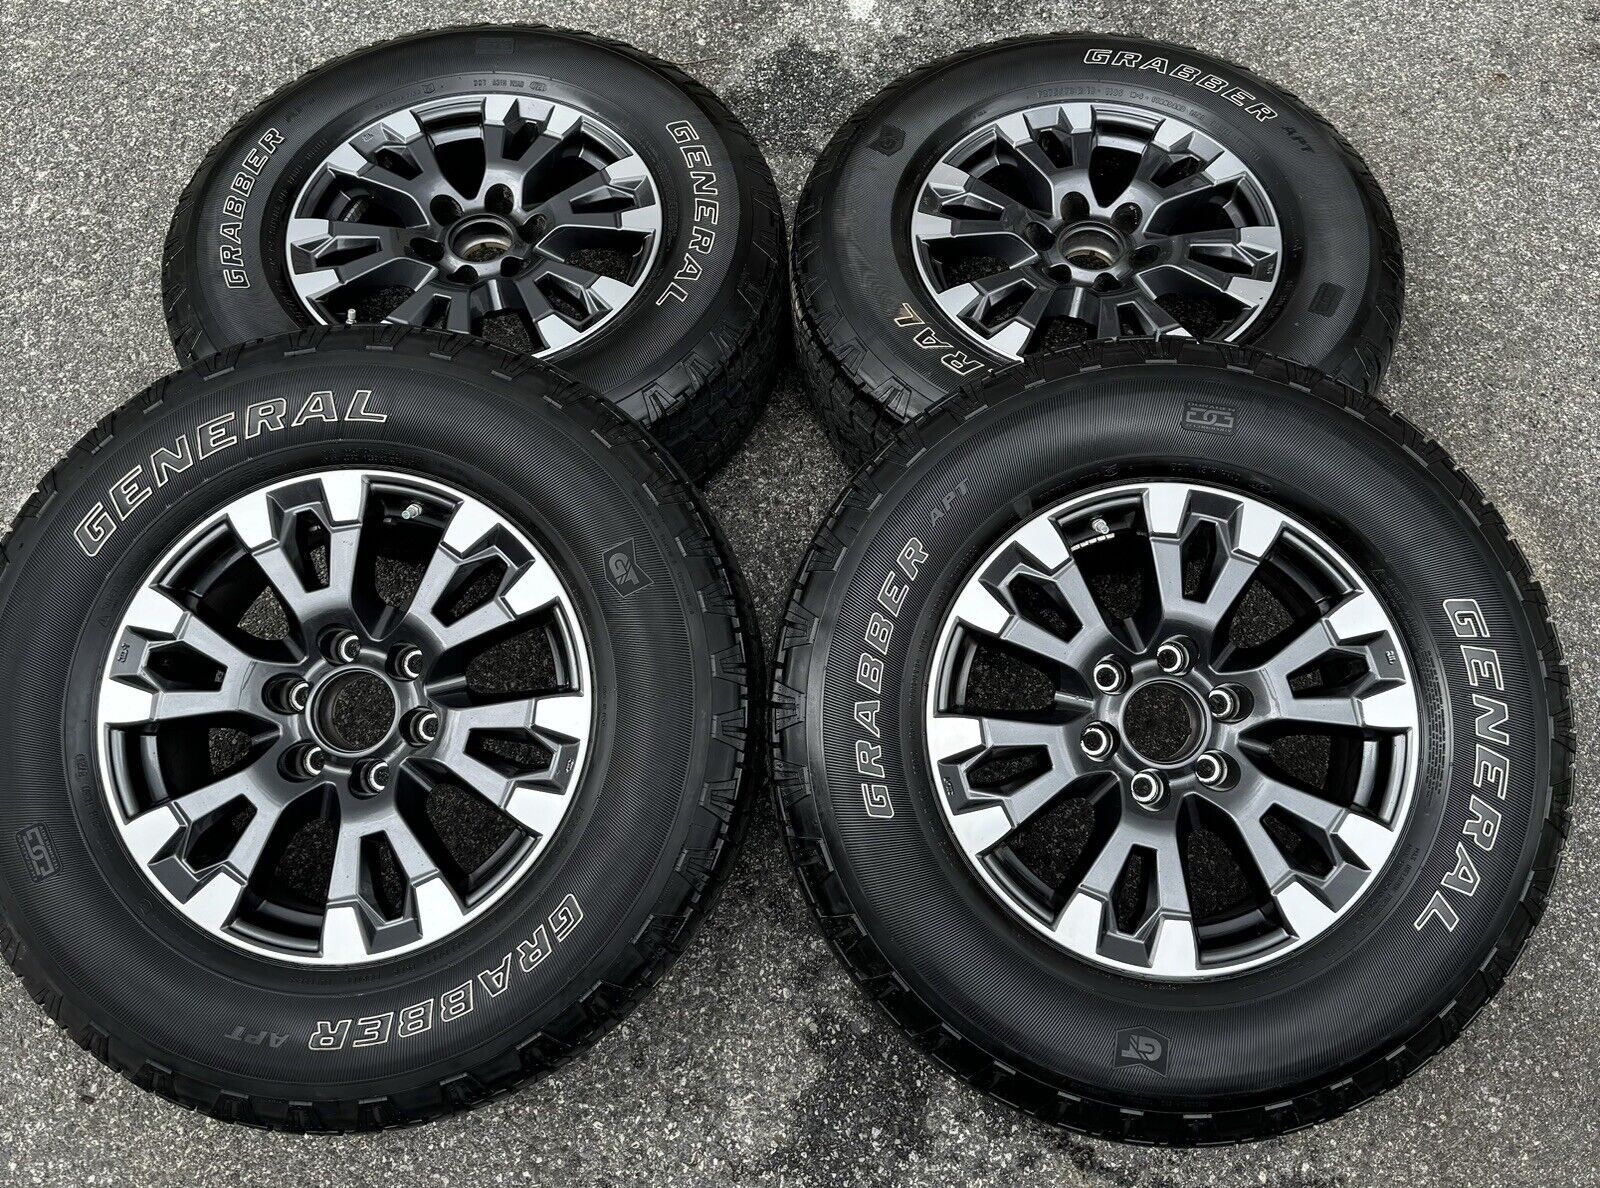 New 2022 Nissan Titan Pro X Armada 18” Wheels Rims Tires 275/70/18 OEM 6x139.7